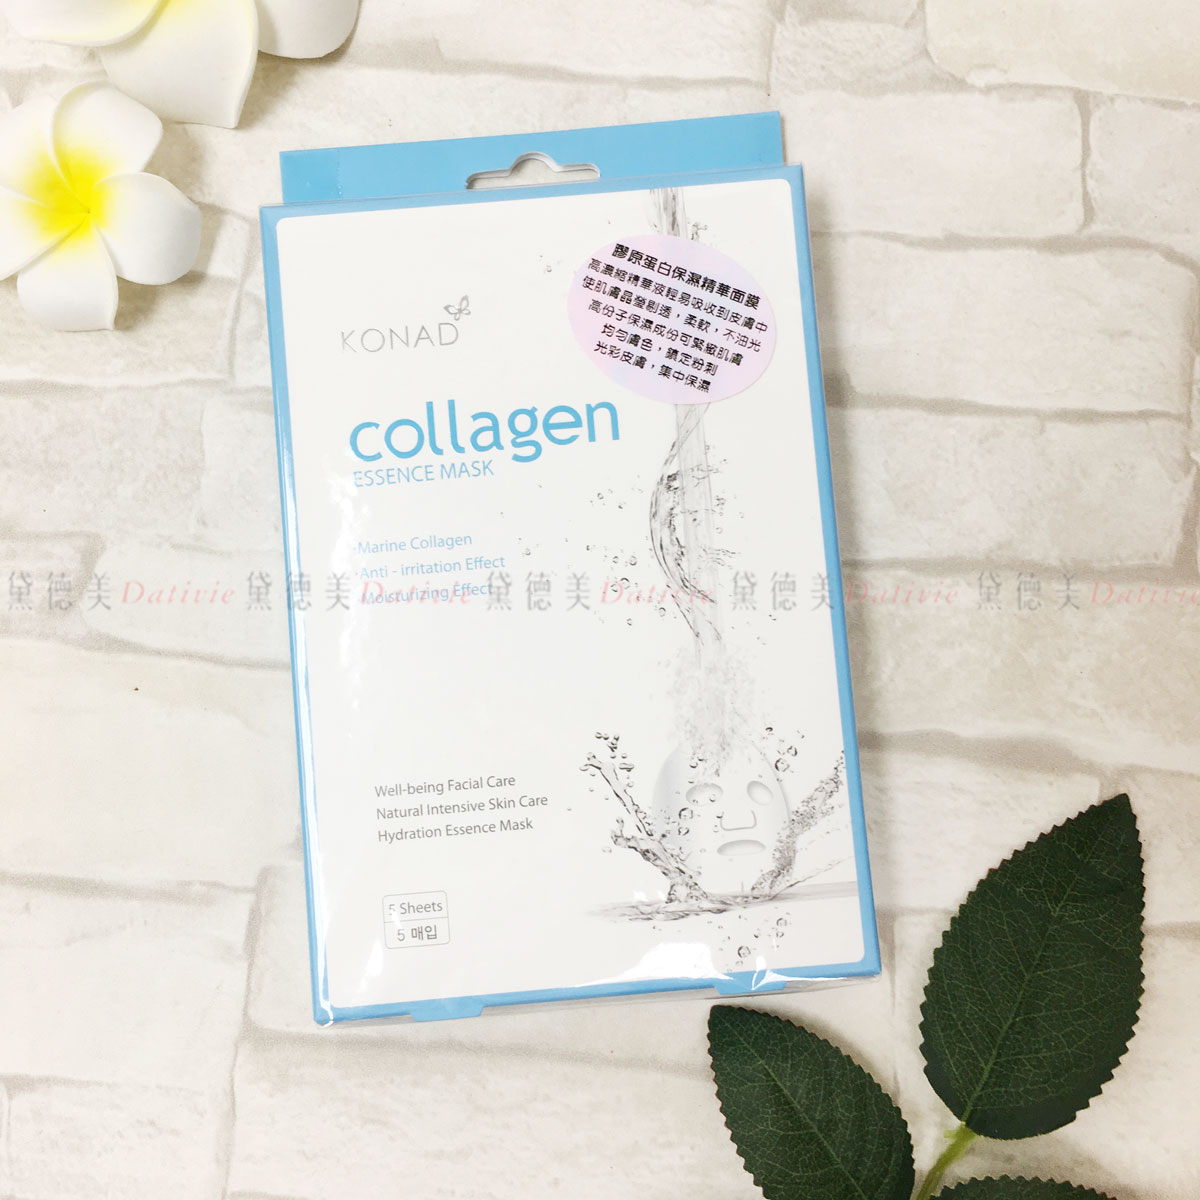 Kona Collagen Essence Mask 膠原蛋白保濕精華面膜 5入 韓國進口